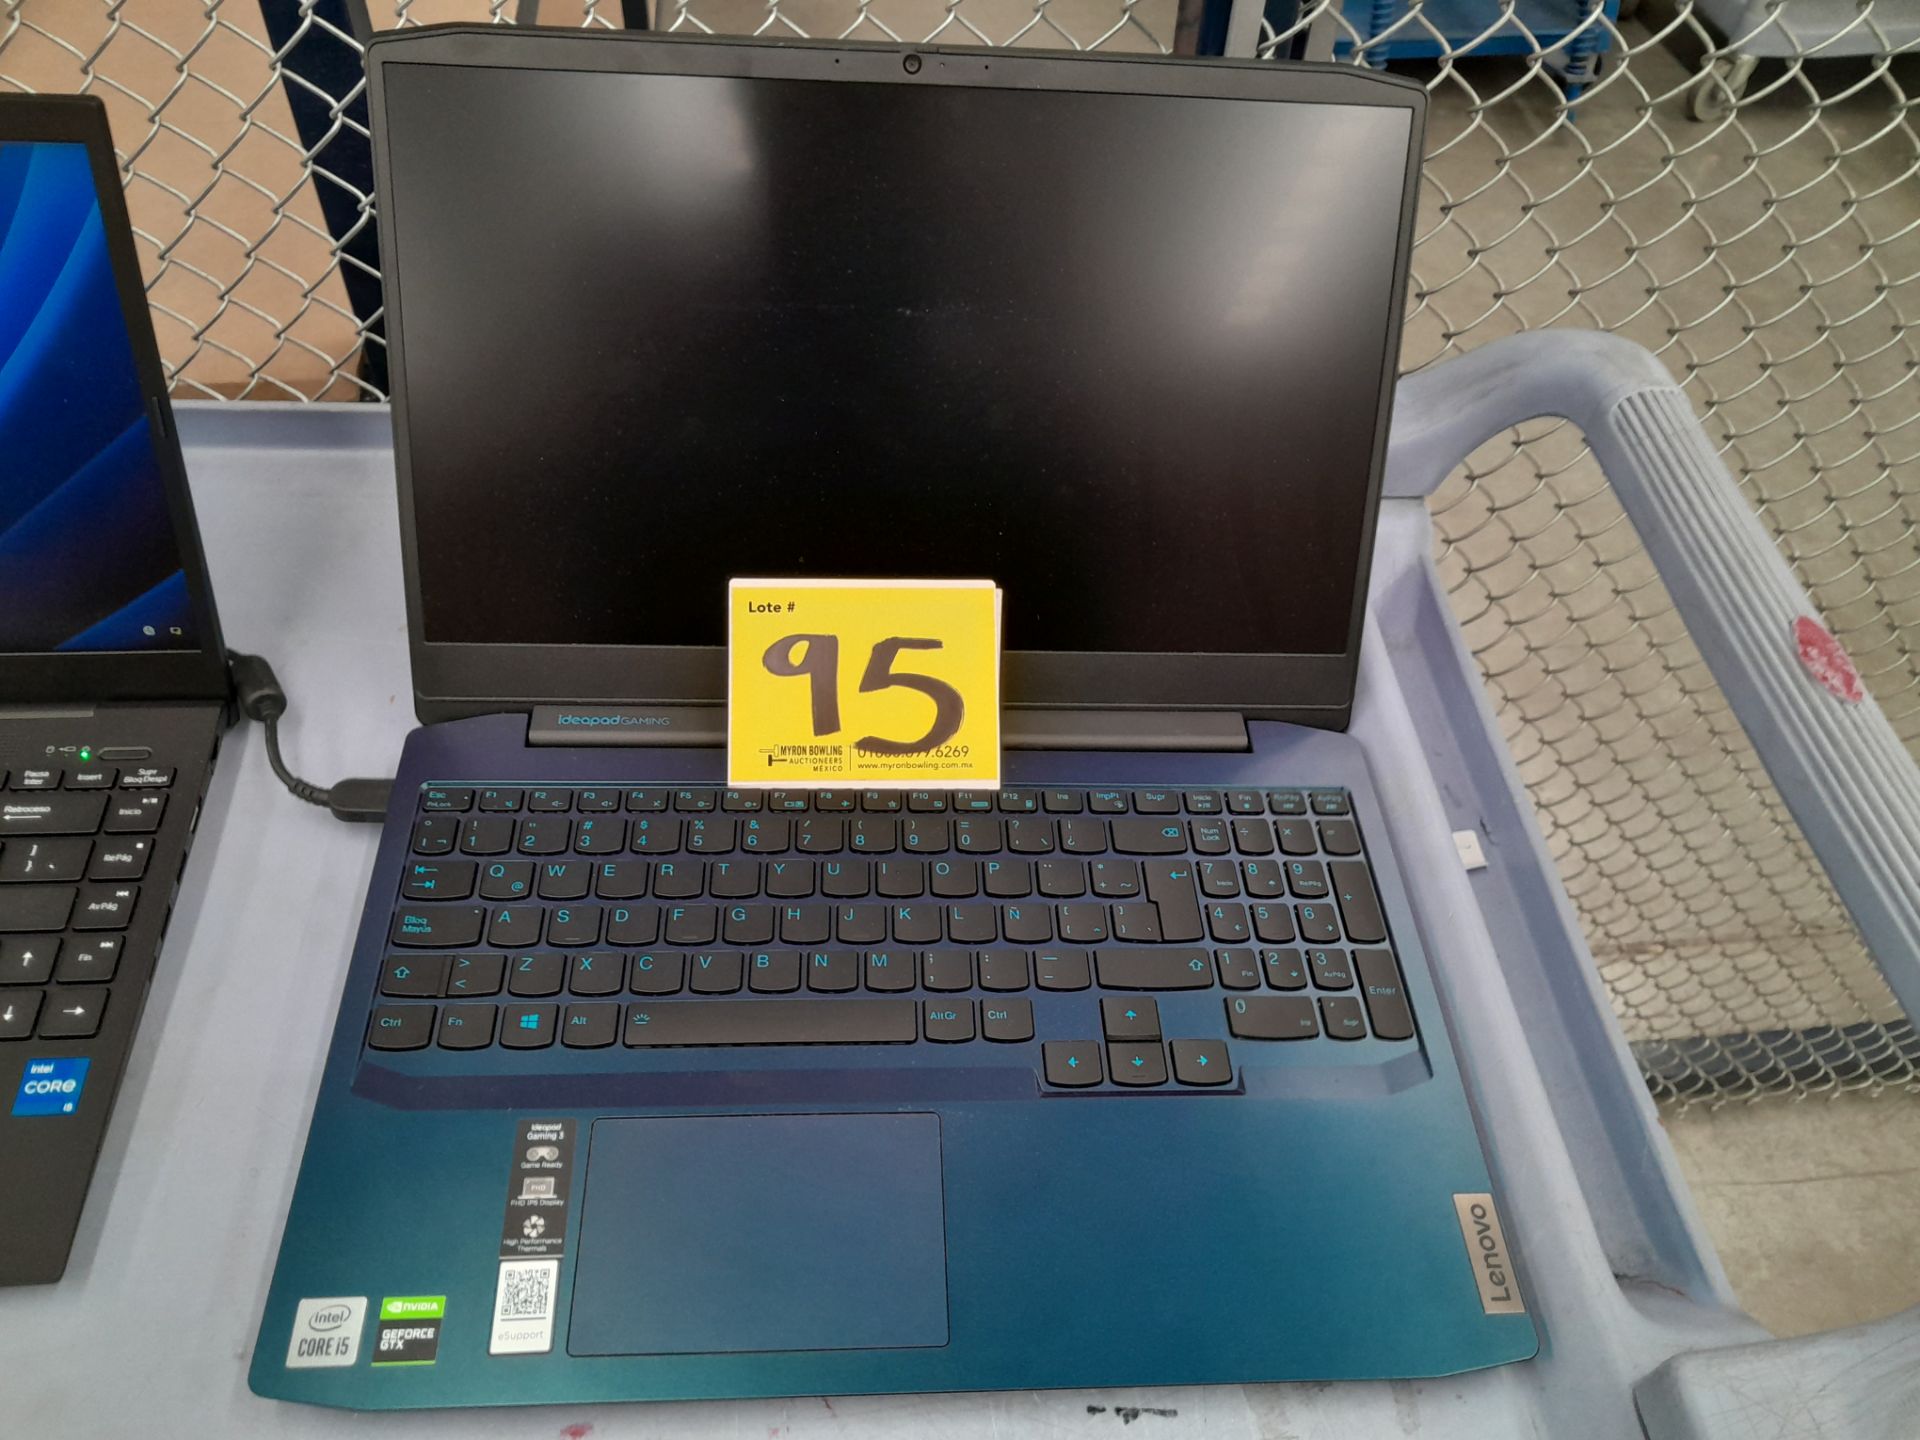 Lote de 2 laptops contiene: 1 Laptop Marca LENOVO, Modelo 81Y4, RAM 8GB, almacenamiento 1 TB, Proce - Image 7 of 13